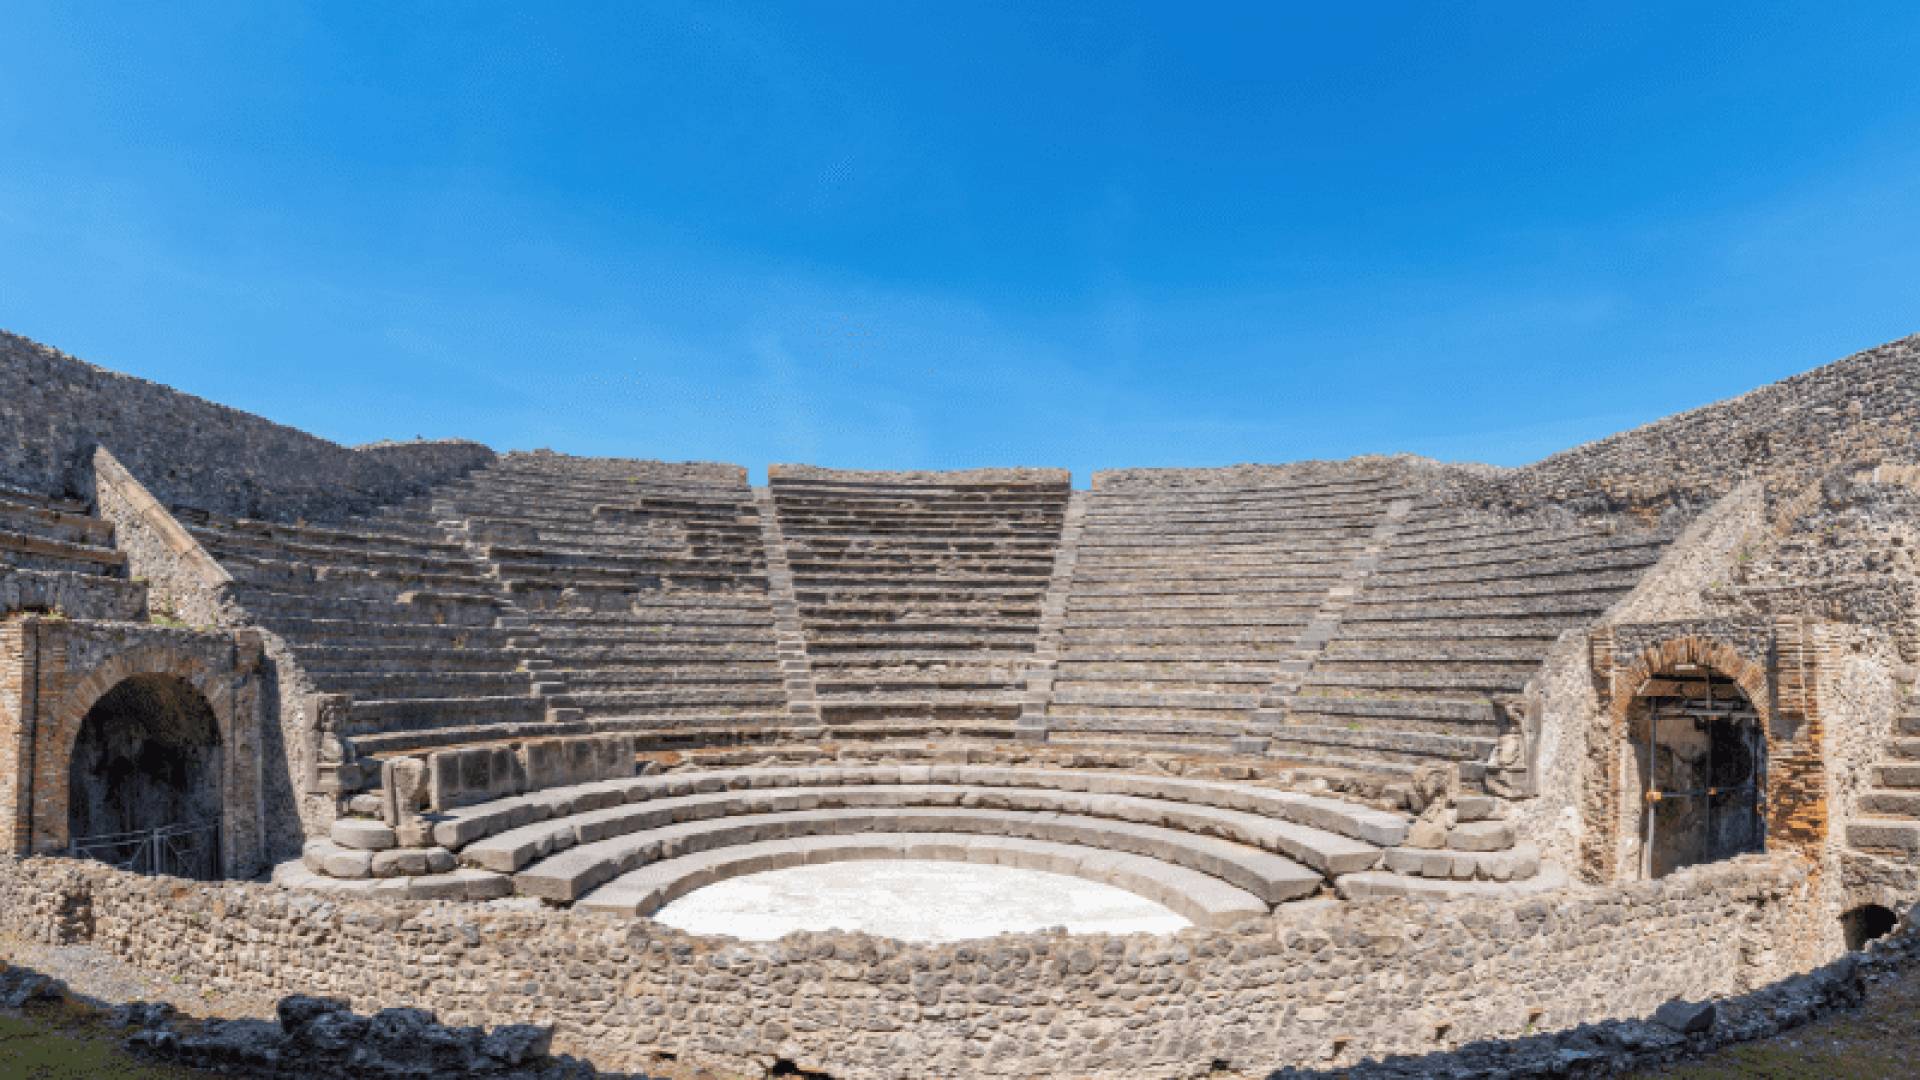 AMPHITHEATER-REGIO II, Amphitheater-Regio Ii